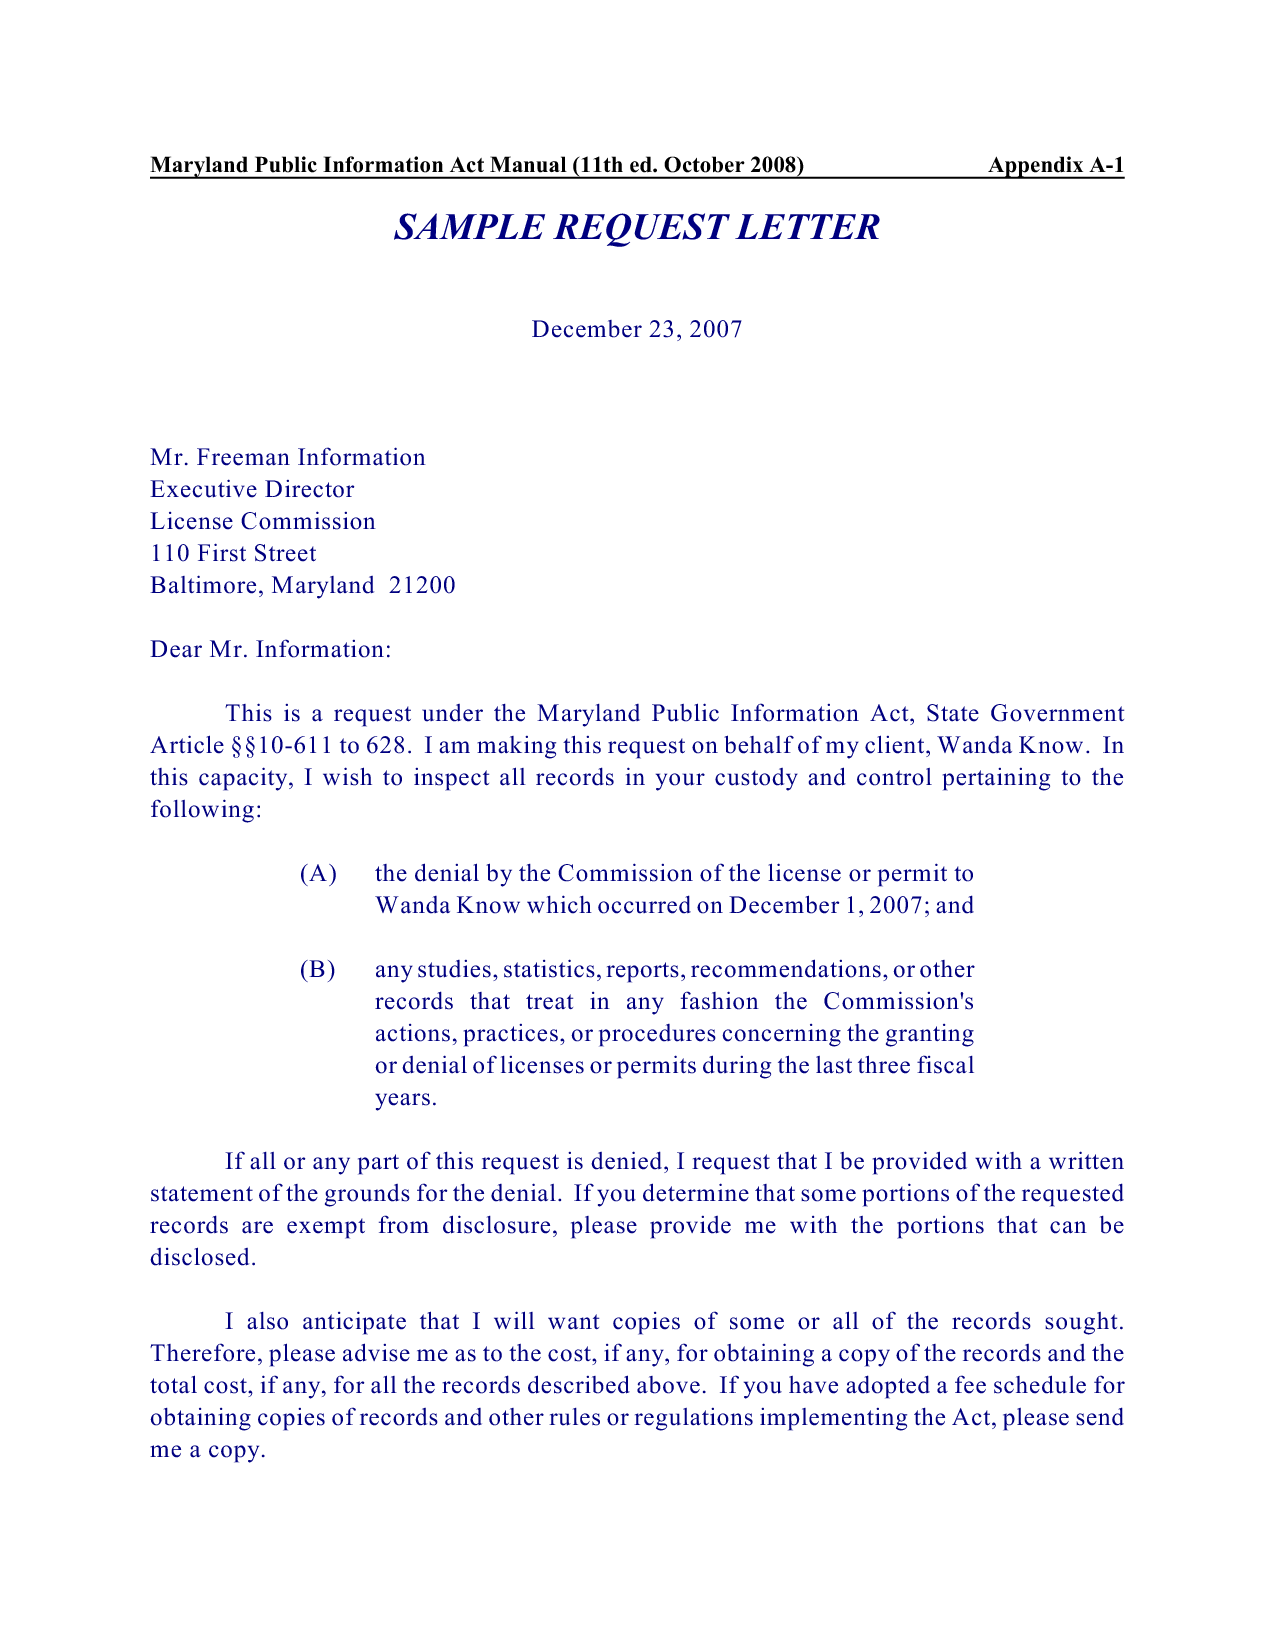 Formal Letter Format Requesting Information Best Letter Format 